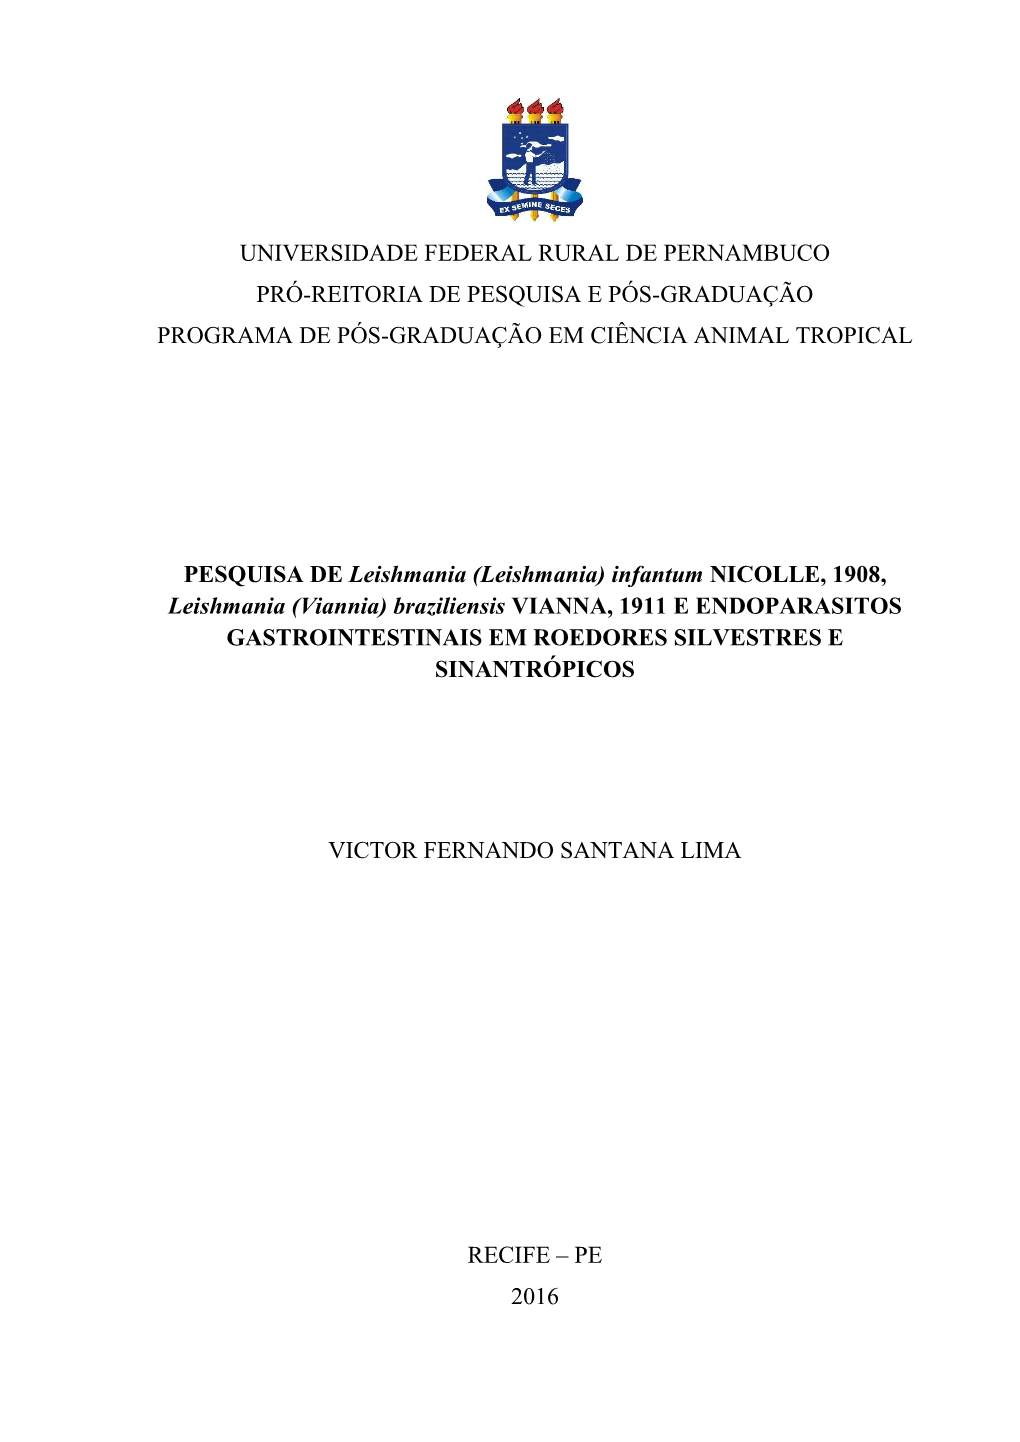 Infantum NICOLLE, 1908, Leishmania (Viannia) Braziliensis VIANNA, 1911 E ENDOPARASITOS GASTROINTESTINAIS EM ROEDORES SILVESTRES E SINANTRÓPICOS